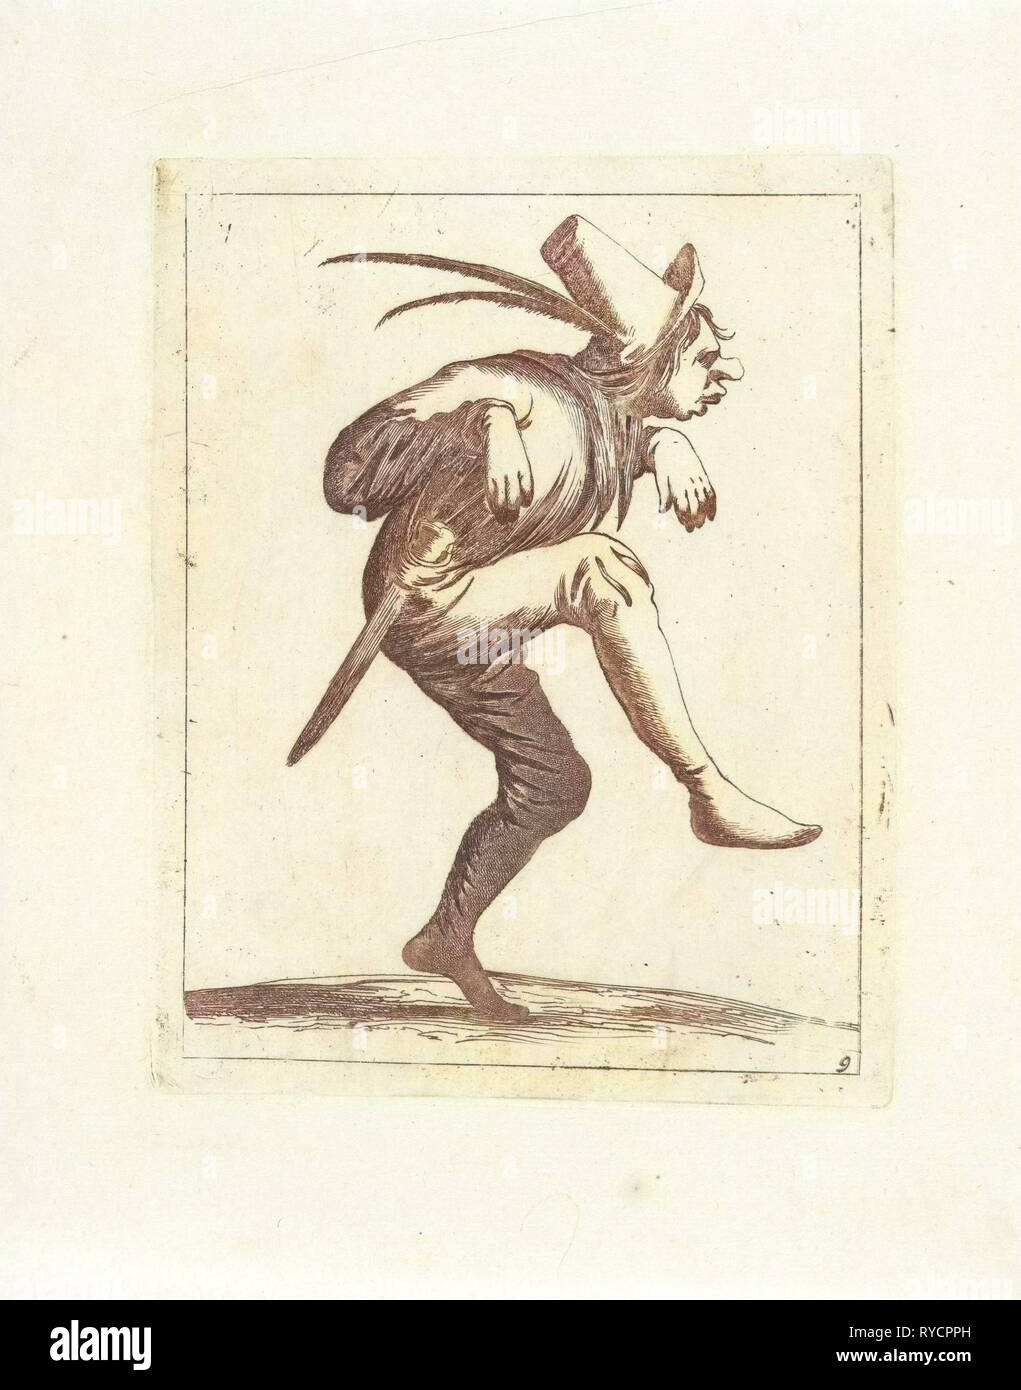 Dancing fool, Pieter Jansz. Quast, Frederik de Wit, 1639 - 1706 Stock Photo